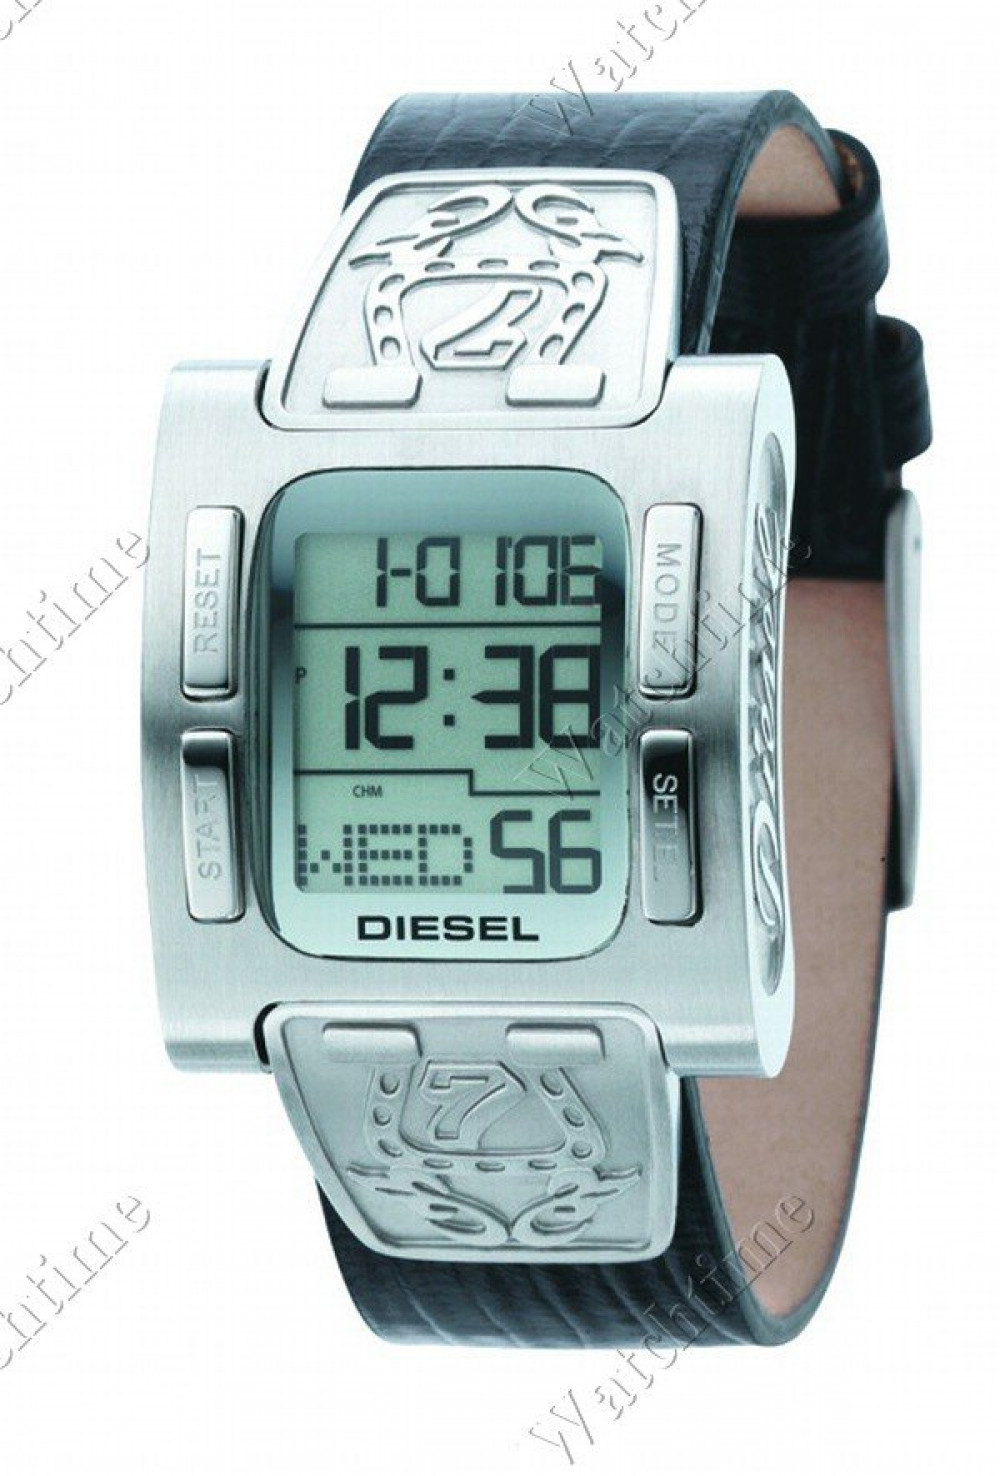 Zegarek firmy Diesel Time Frames, model DZ7058